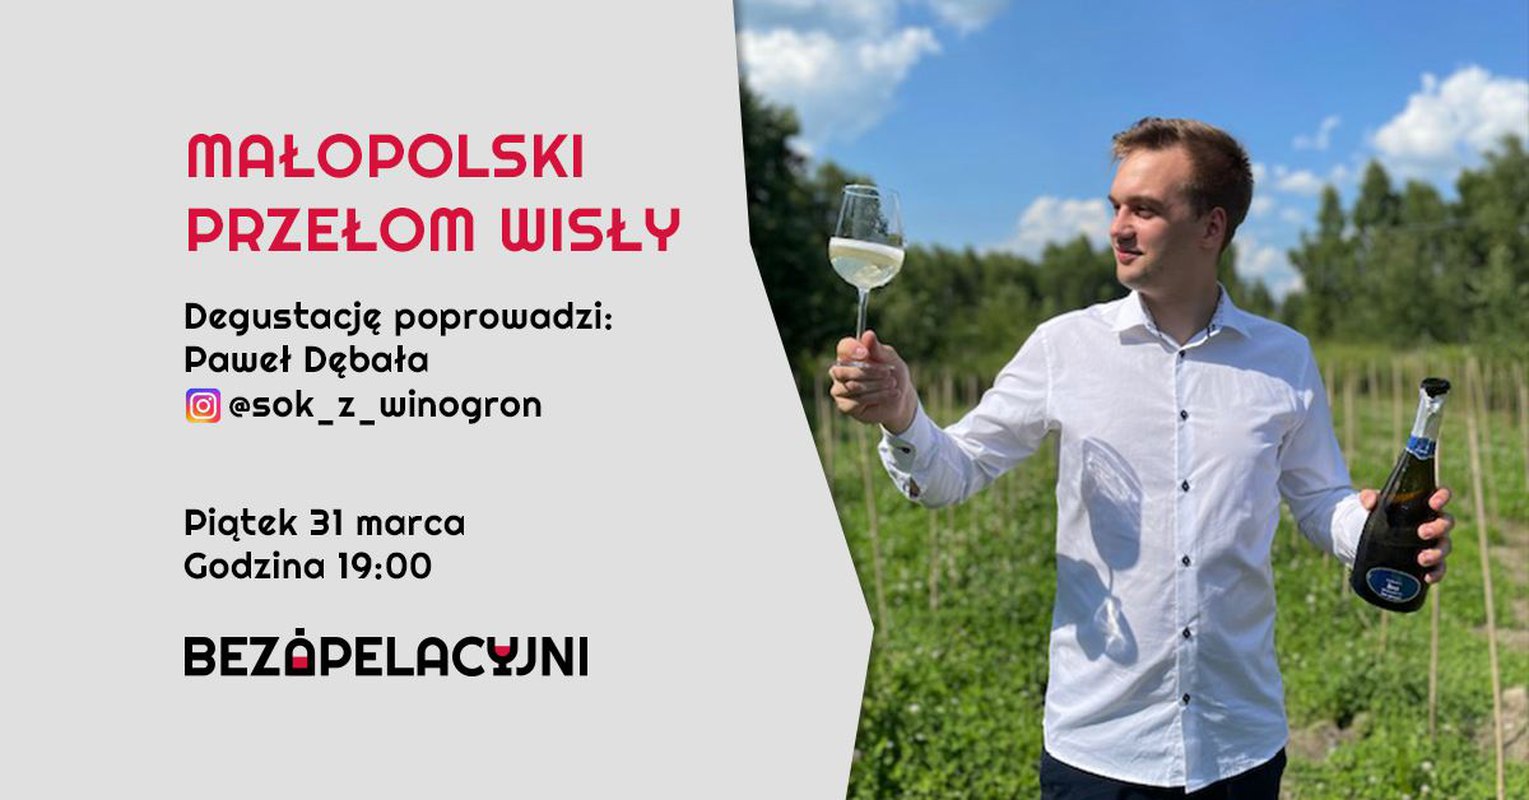 Małopolski Przełom Wisły / Degustacja komentowana z Pawłem Dębałą